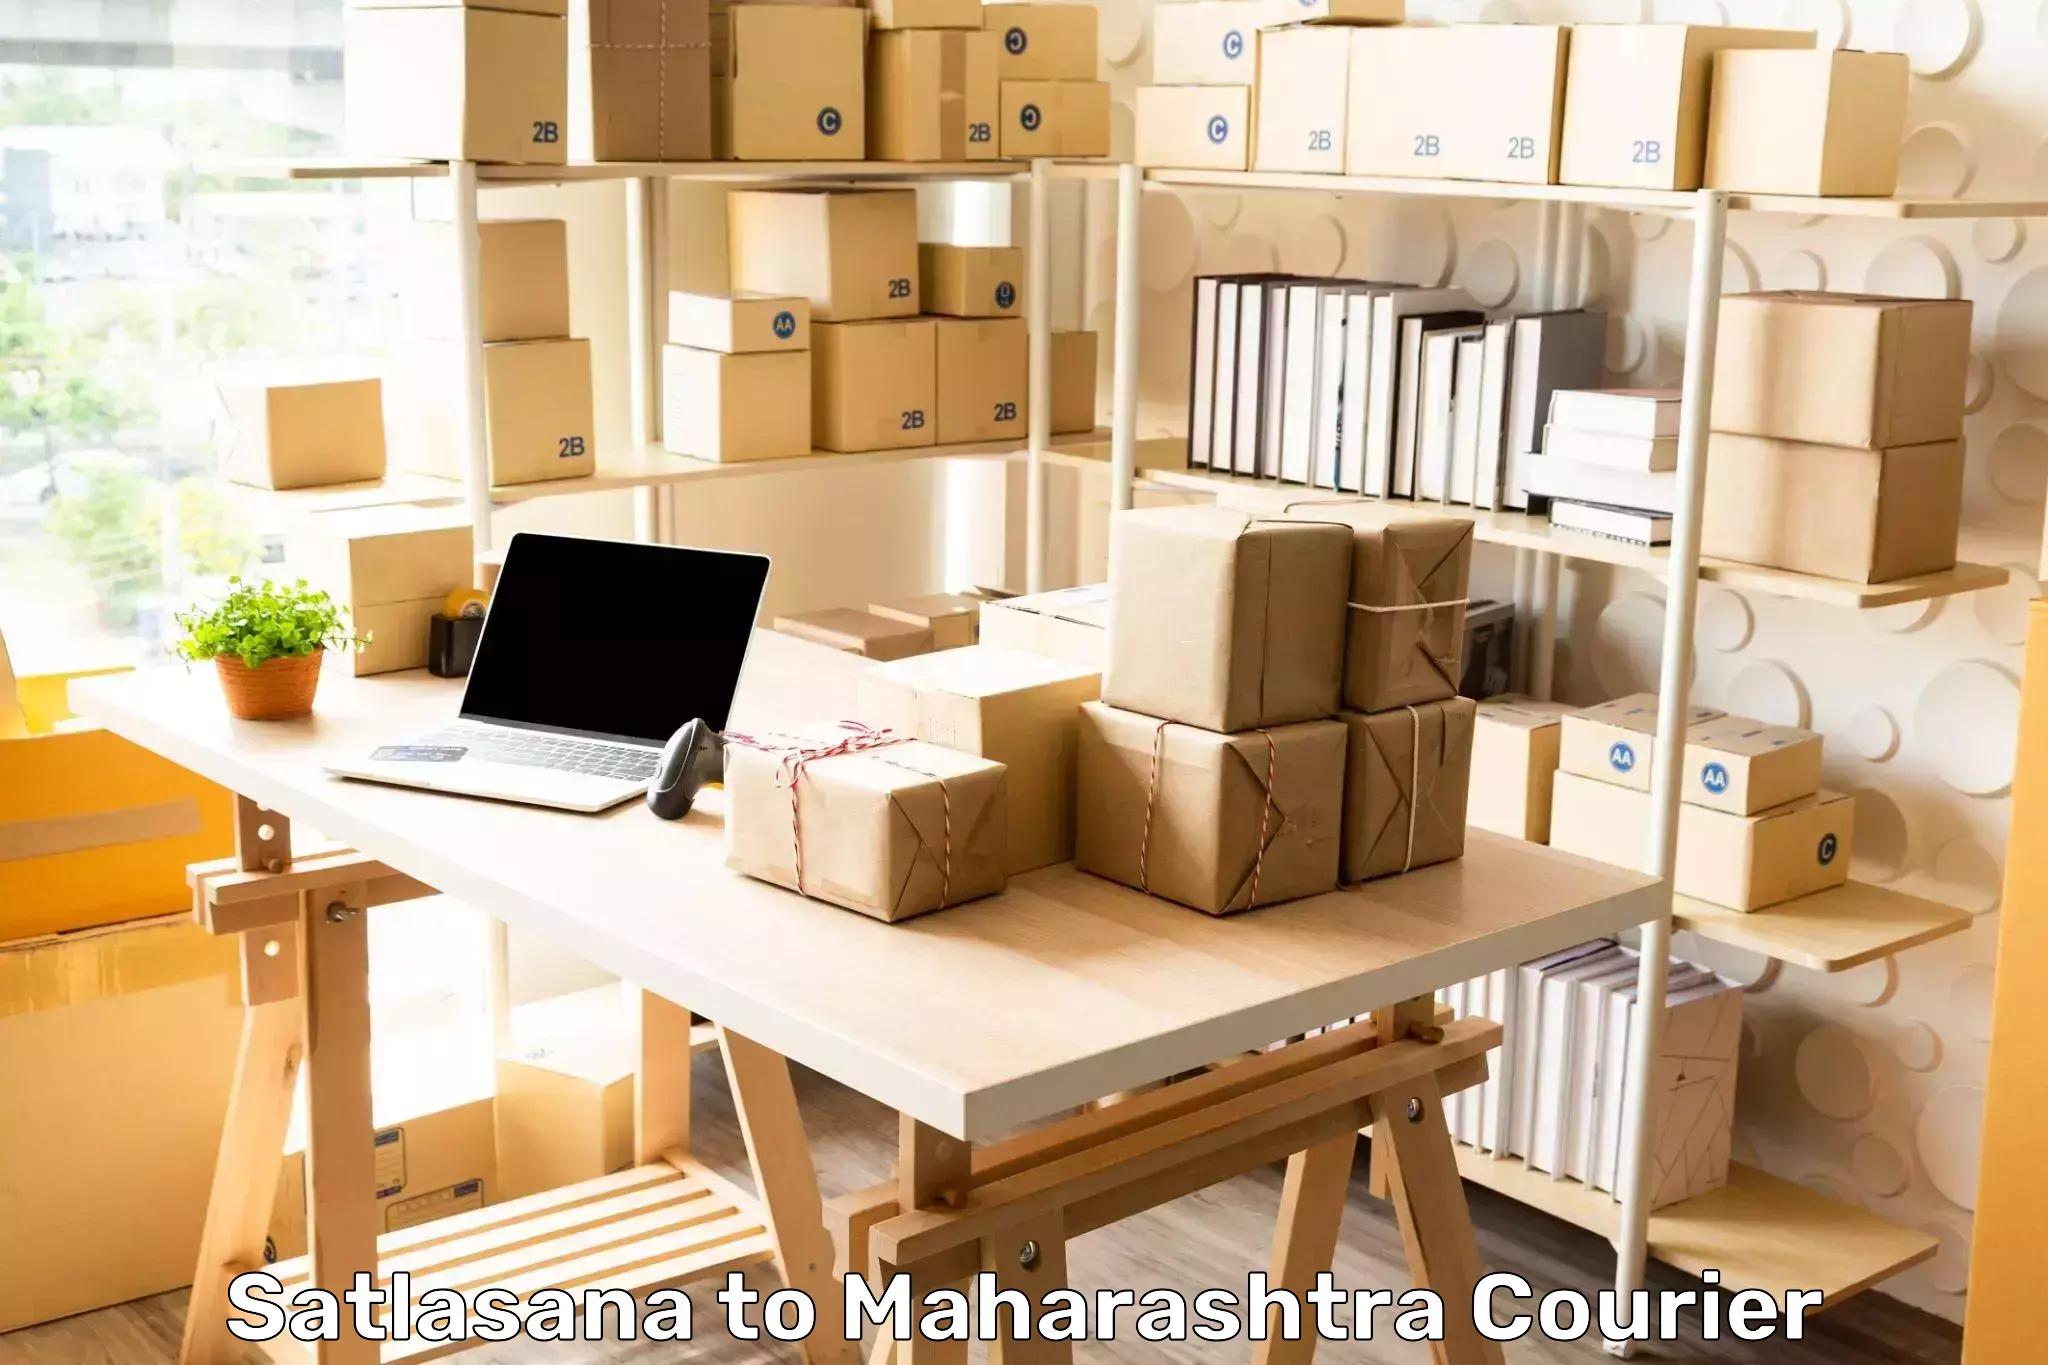 Ocean freight courier Satlasana to Maharashtra